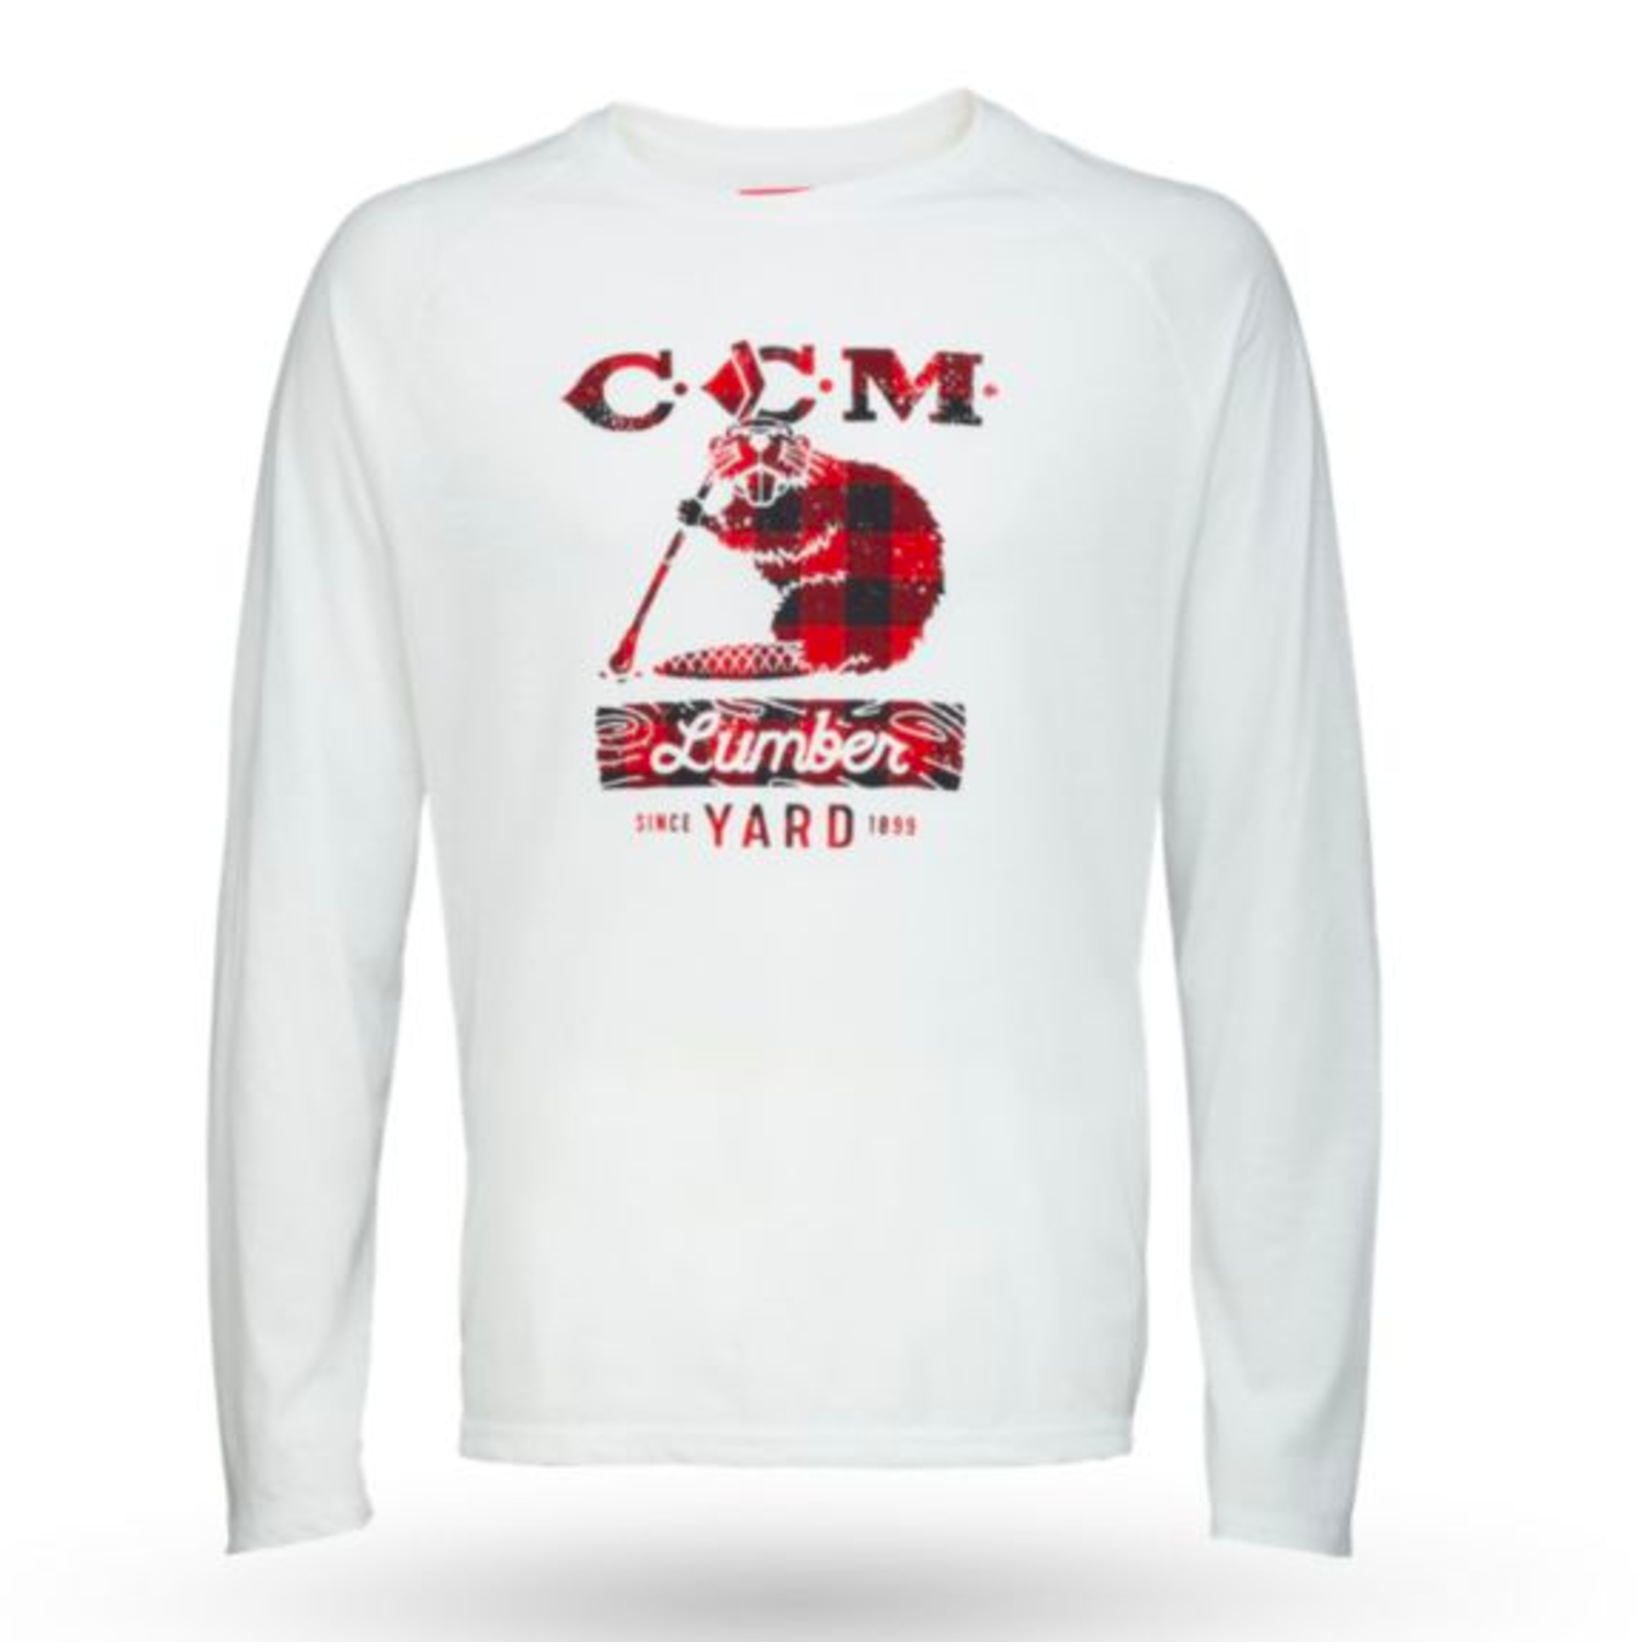 CCM, Shirts